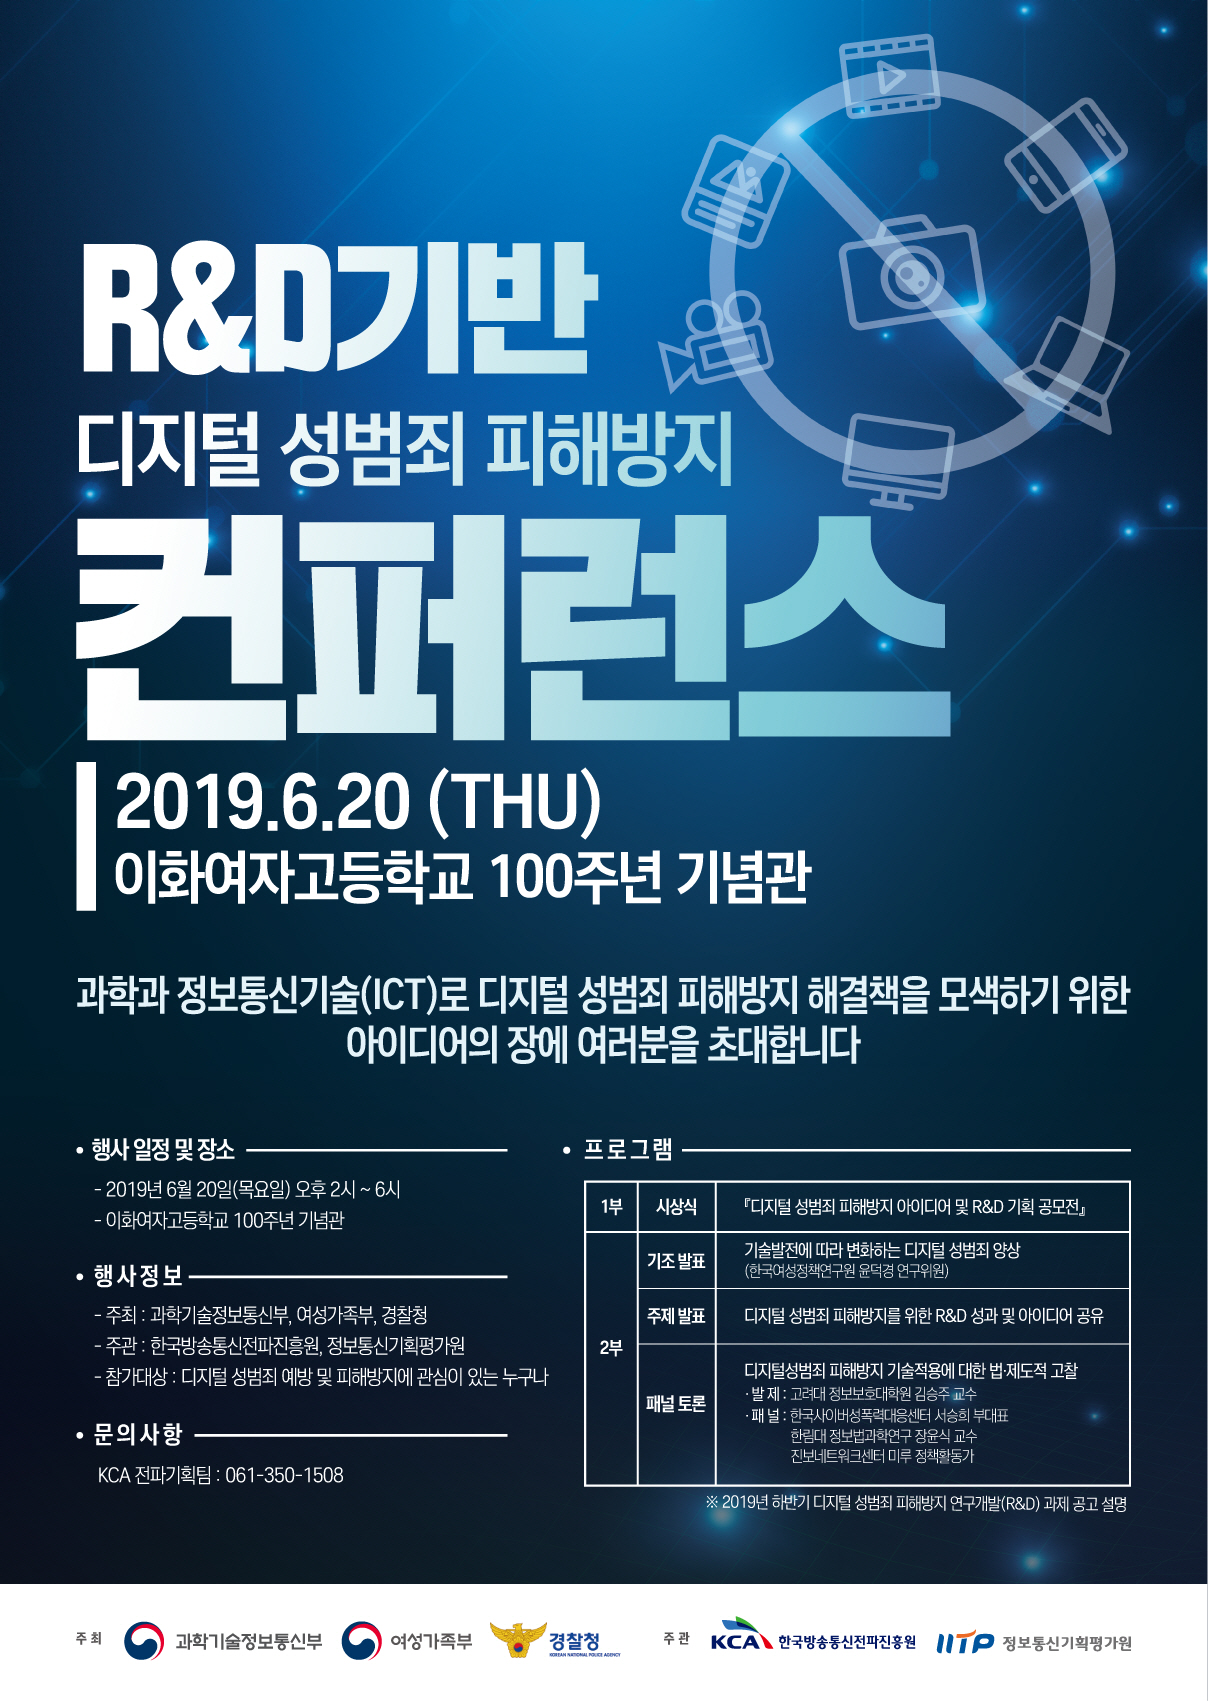 R&D기반 디지털 성범죄 피해방지 컨퍼런스 개최안내